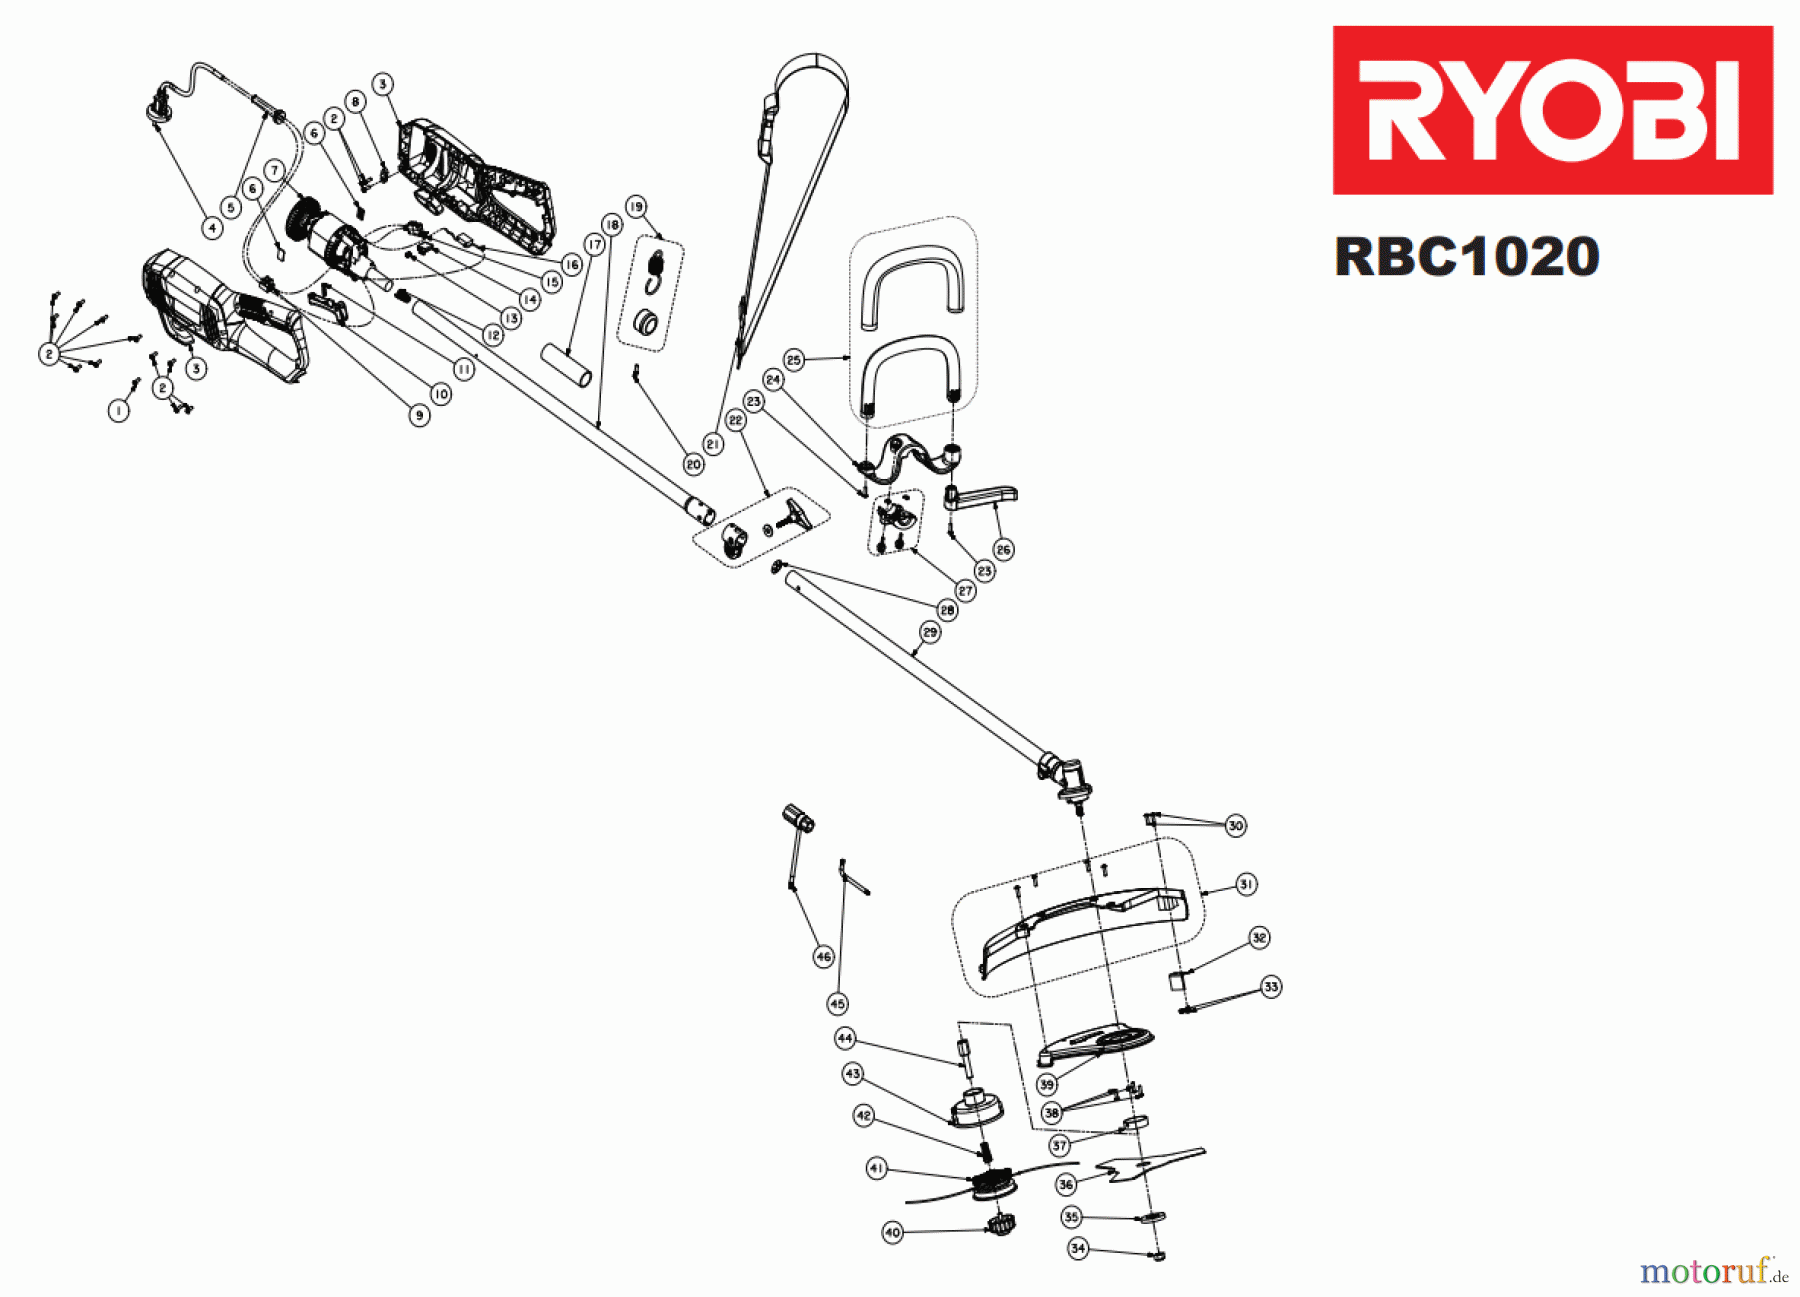  Ryobi Sensen Freischneider Elektro RBC1020